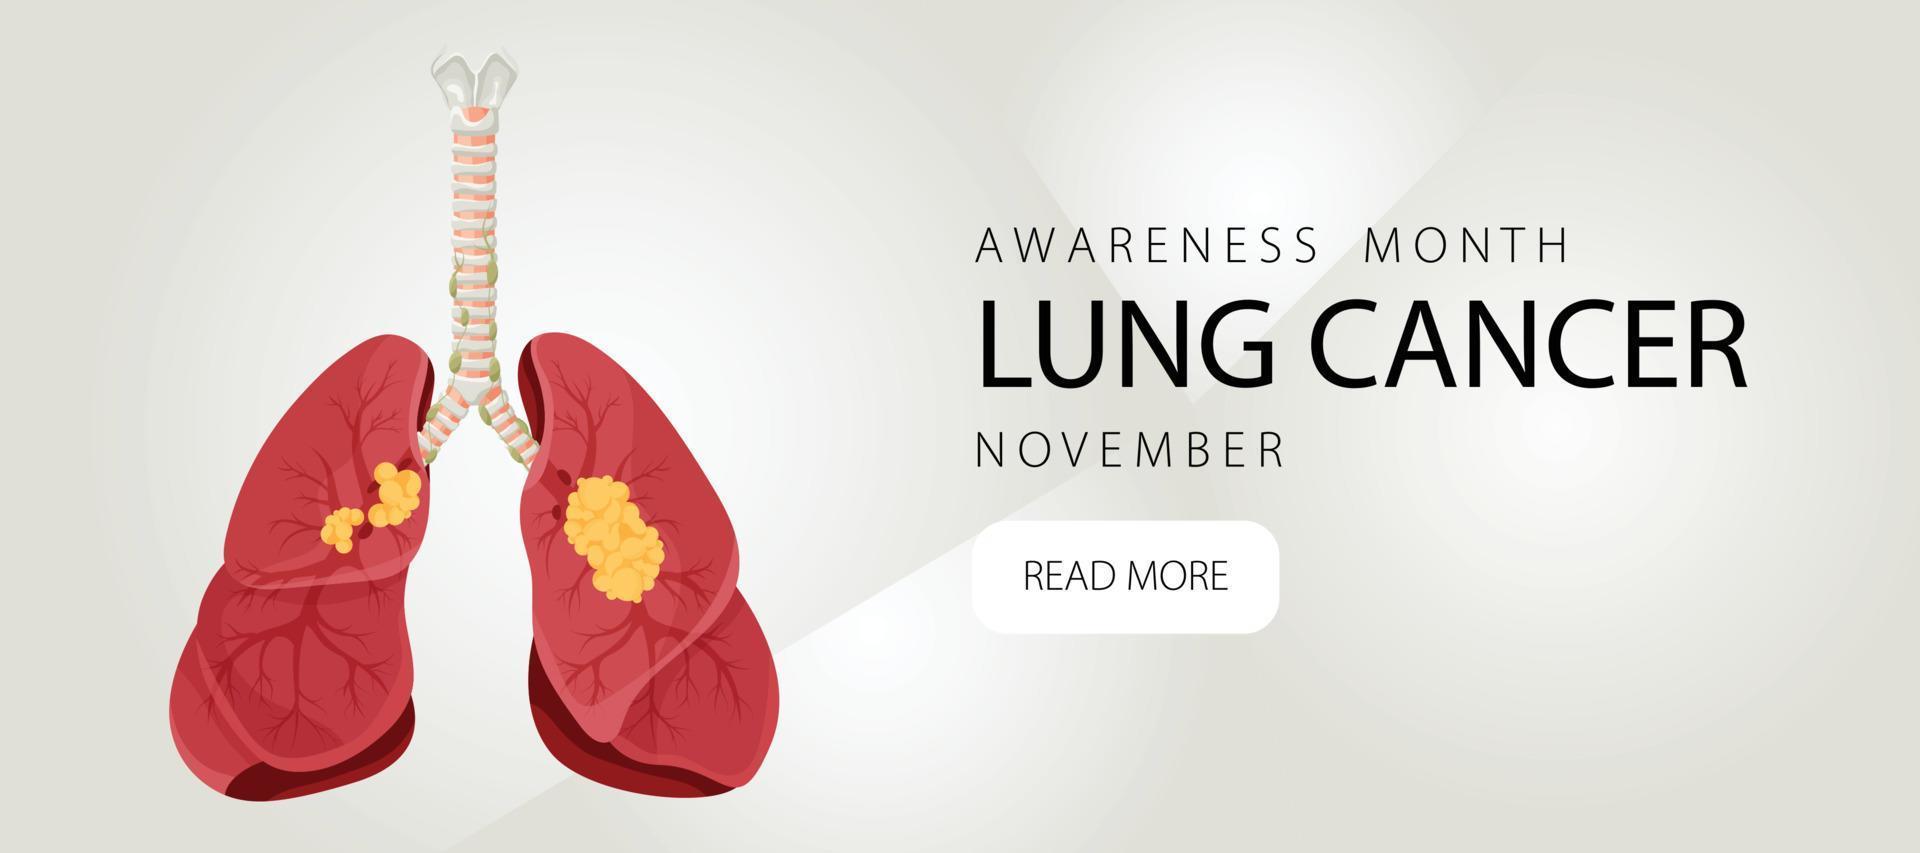 banner informativo sul cancro ai polmoni. modello di progettazione per siti Web, riviste. illustrazione vettoriale in stile cartone animato.